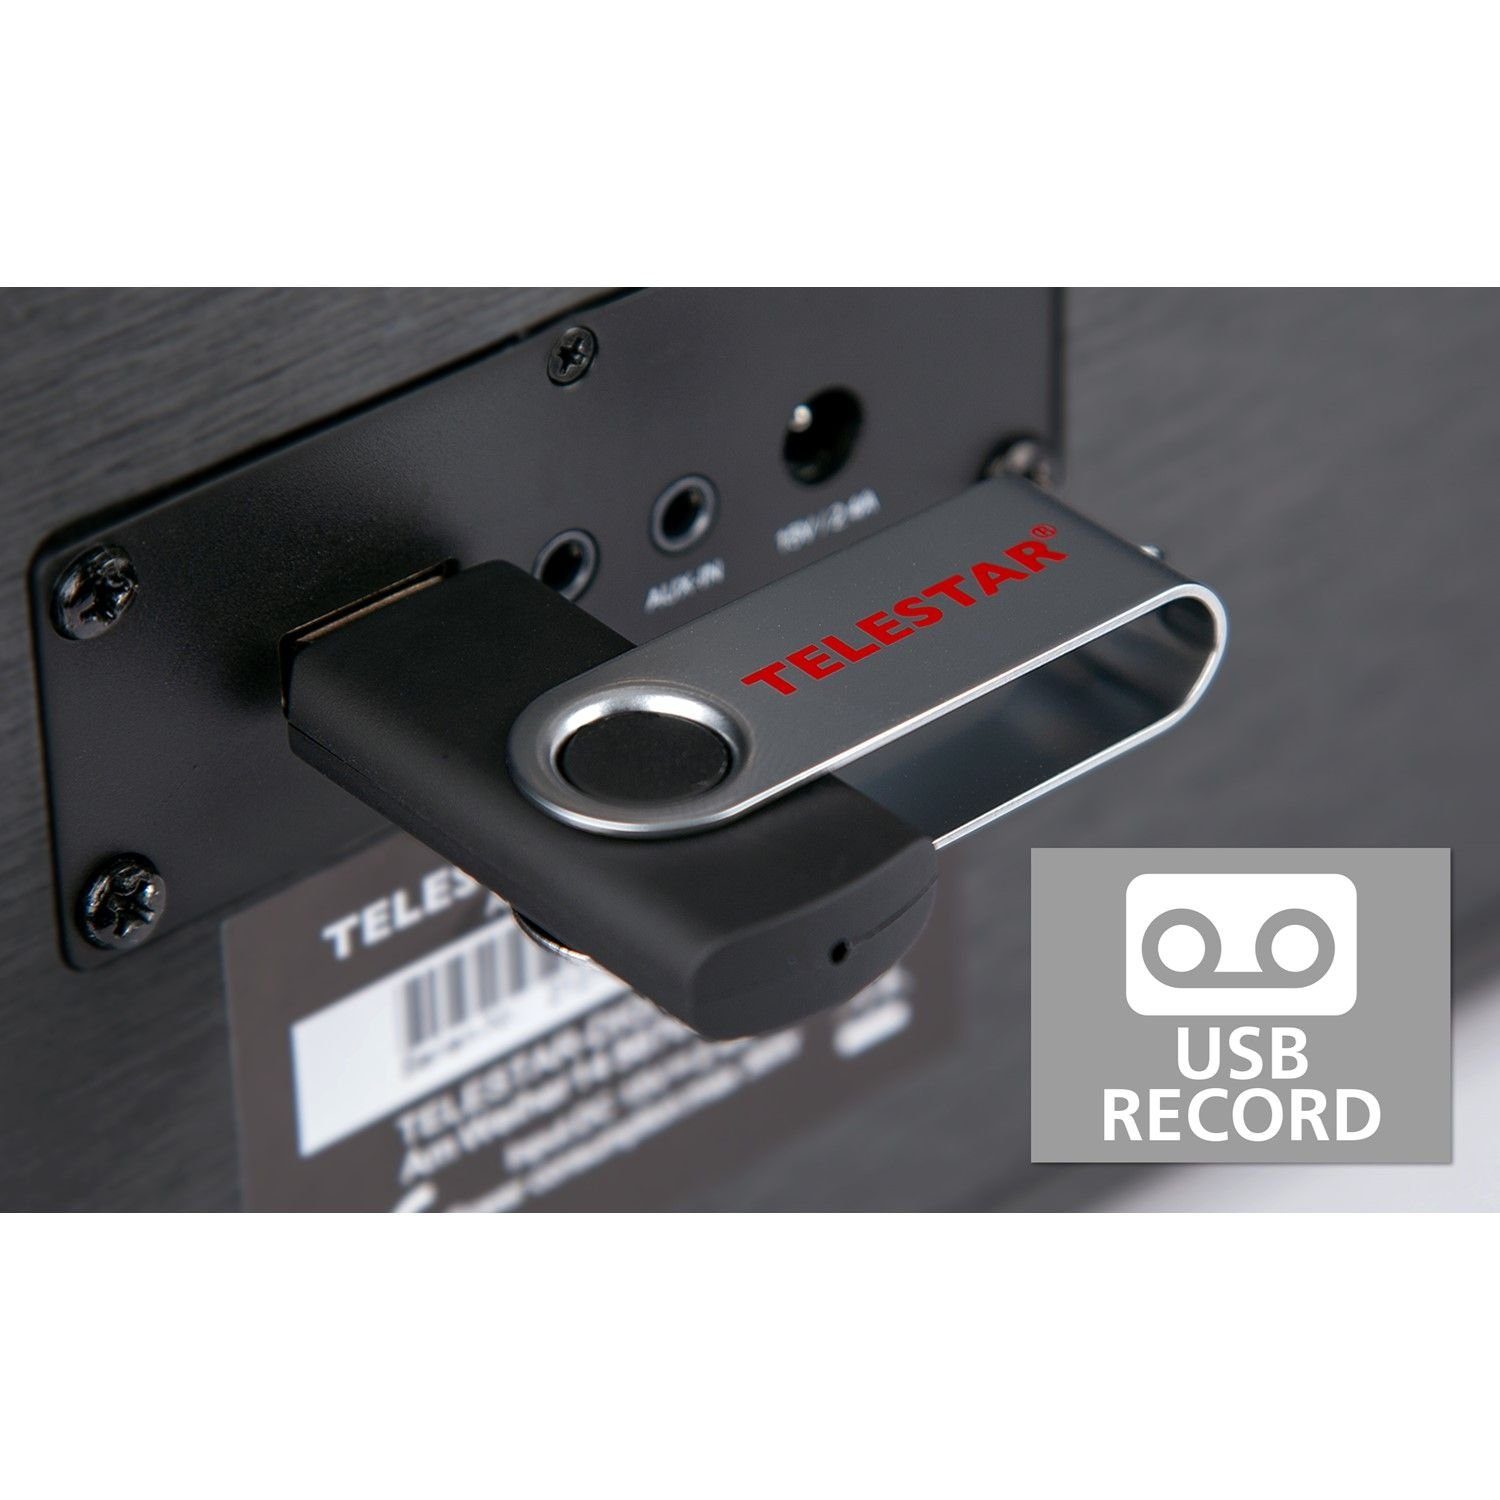 TELESTAR DIRA S 24 (DAB+/FM, Record-Taste mit Sleeptimer Digitalradio über (DAB+/UKW) Timer Modi, oder (DAB) (Wecker für CD mit CD-Player Ladefunktion schwarz USB, Stereoradio externe Bluetooth) möglich) und Aufzeichnung USB unterschiedlichen Geräte